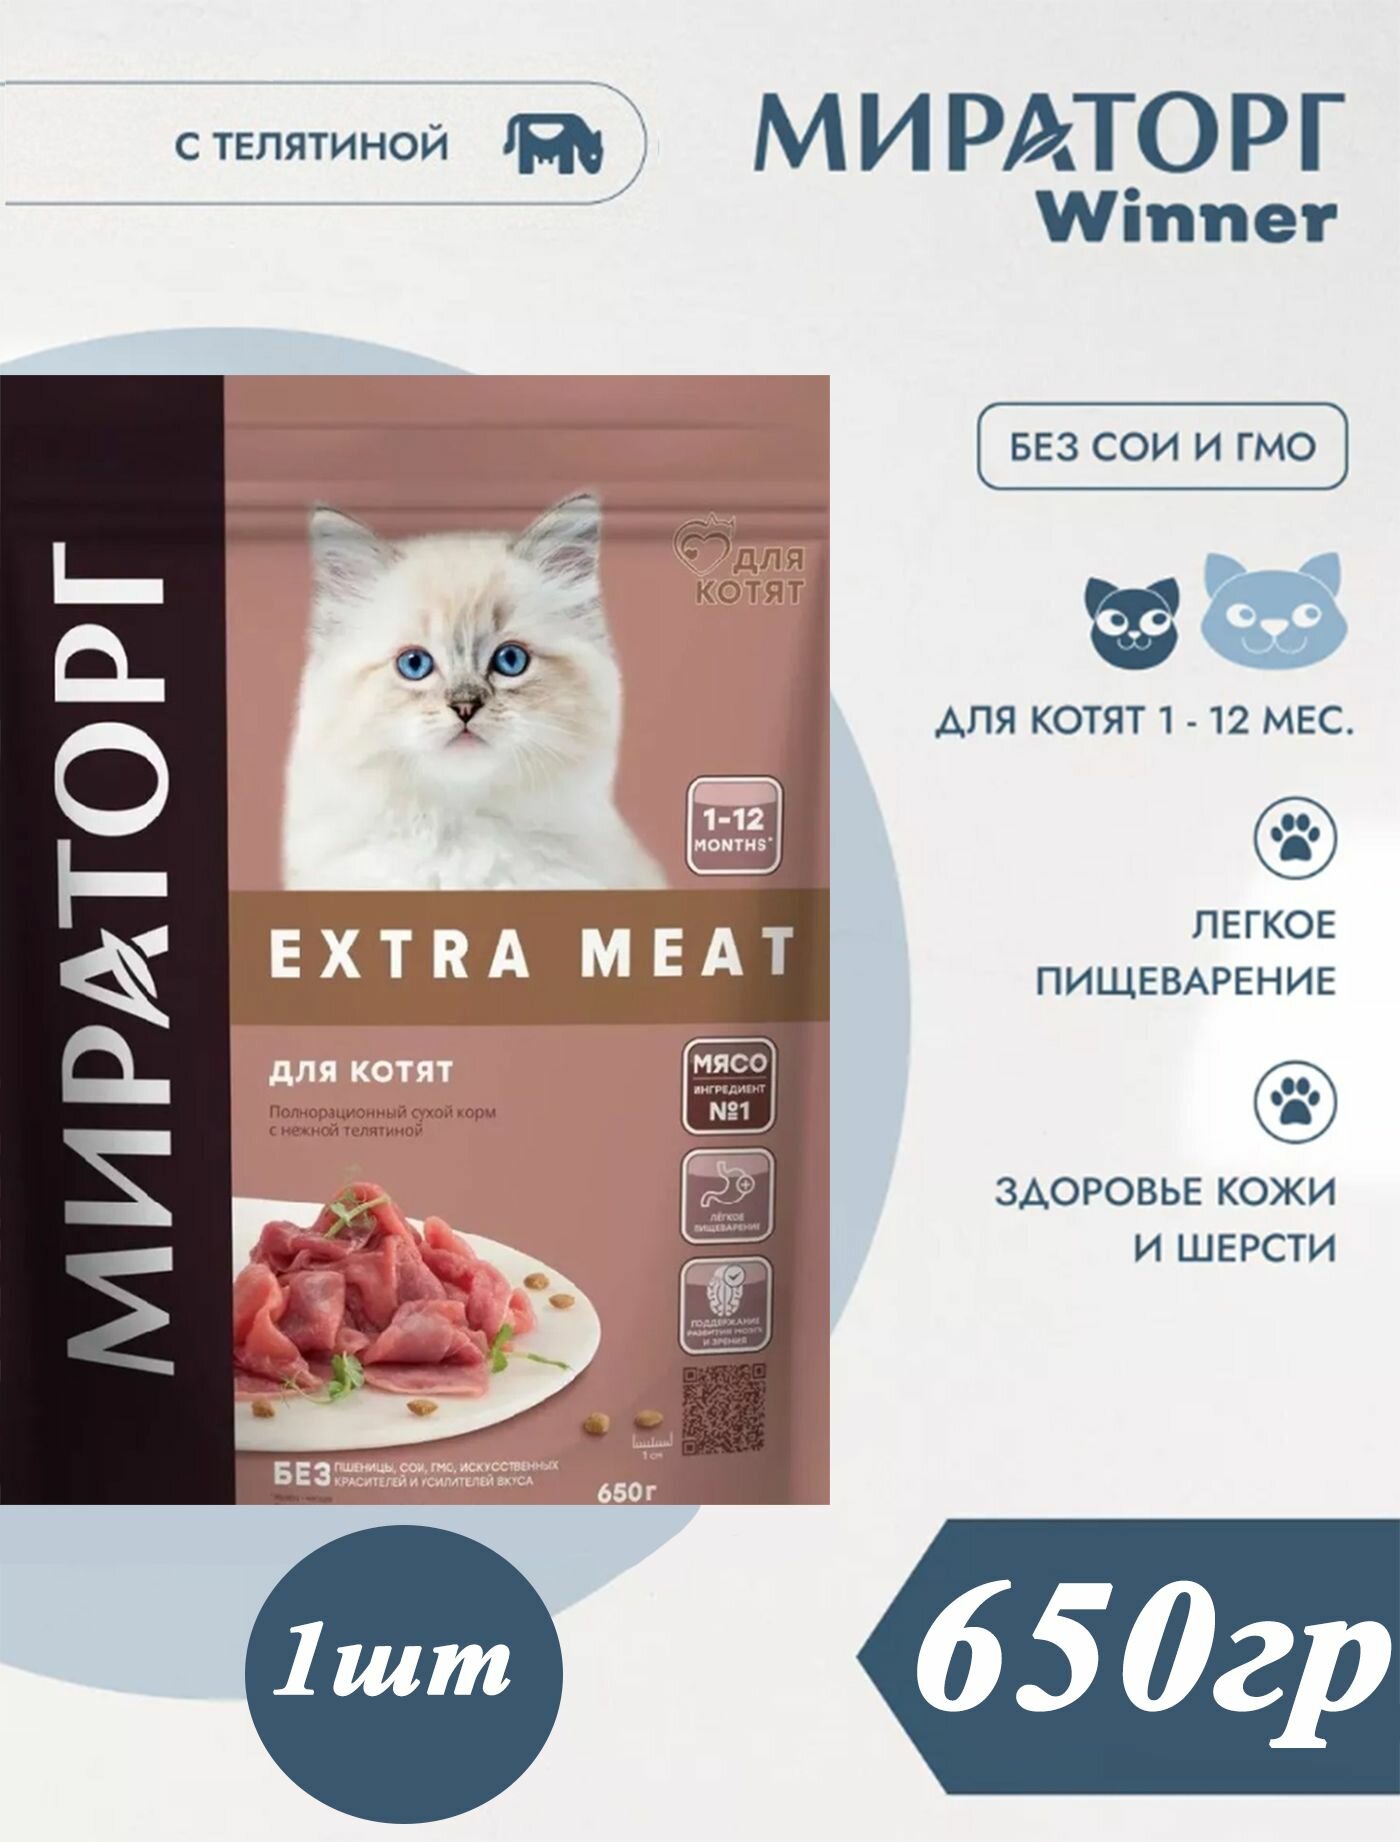 Мираторг Extra MEAT с нежной телятиной 650гр 1шт для котят от 1 до 12 месяцев